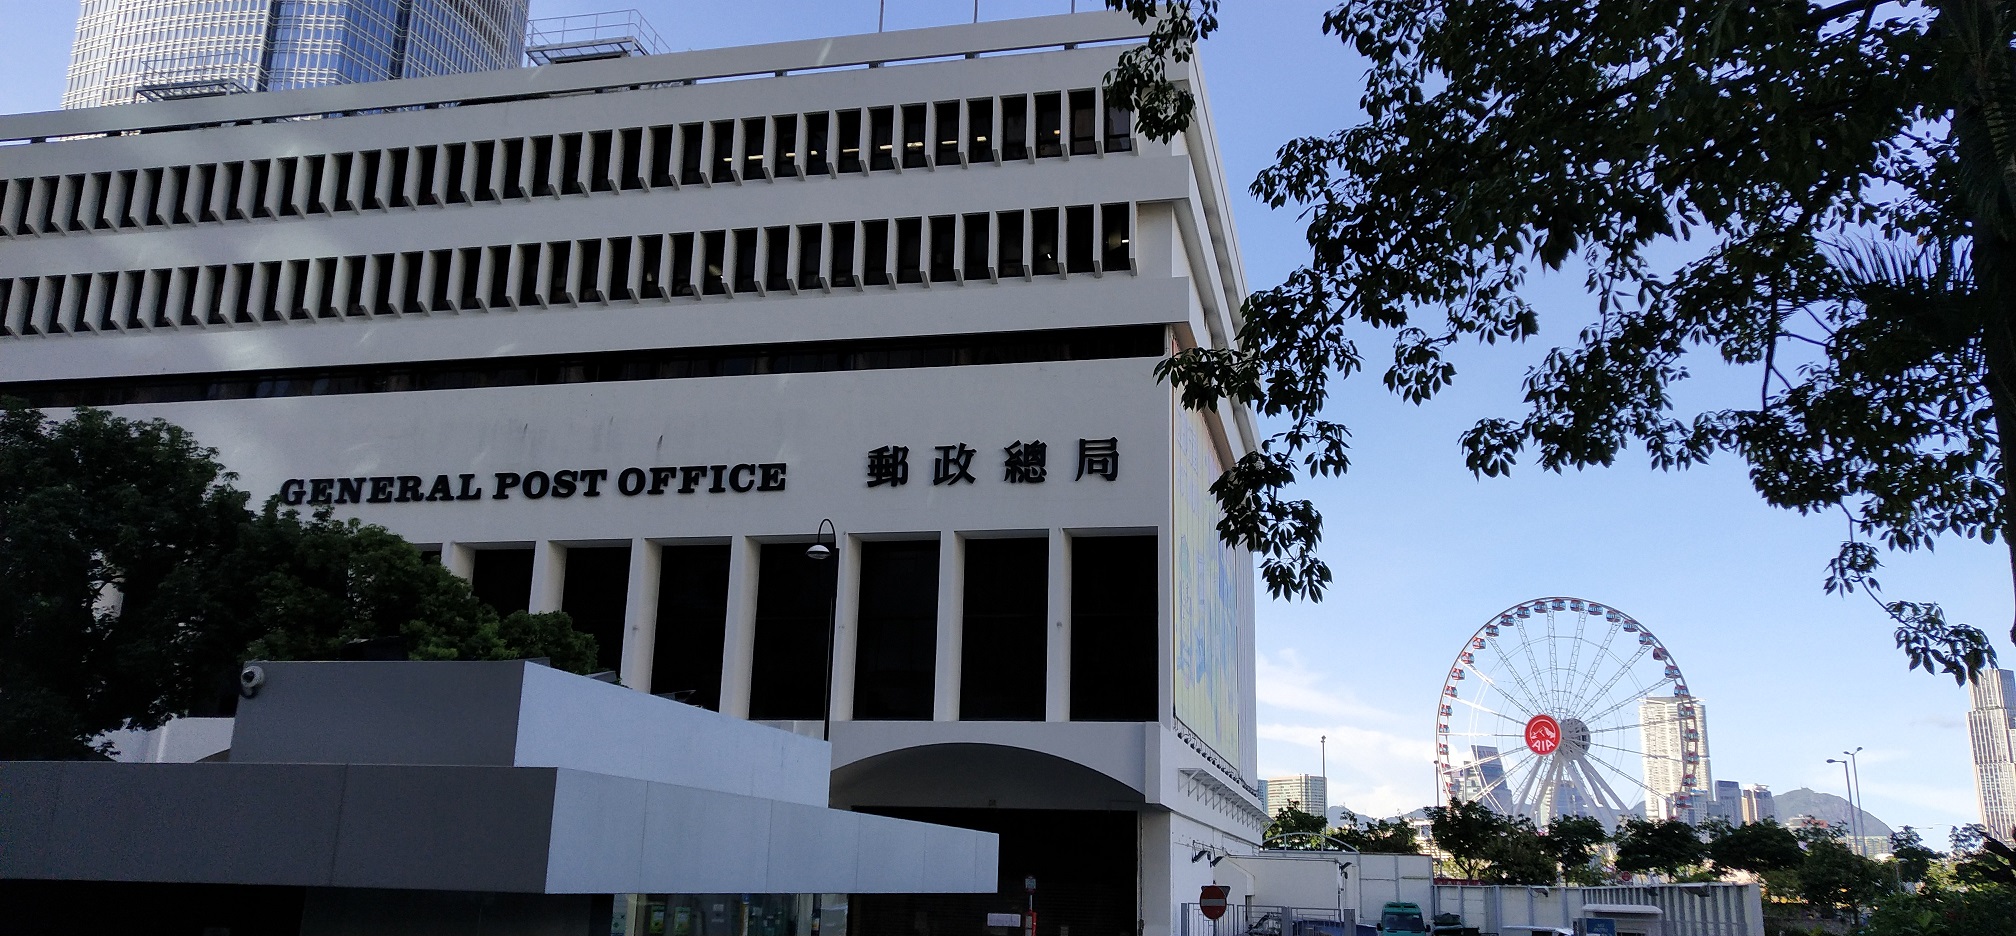 General Post Office and Hong Kong Eye ferries wheel